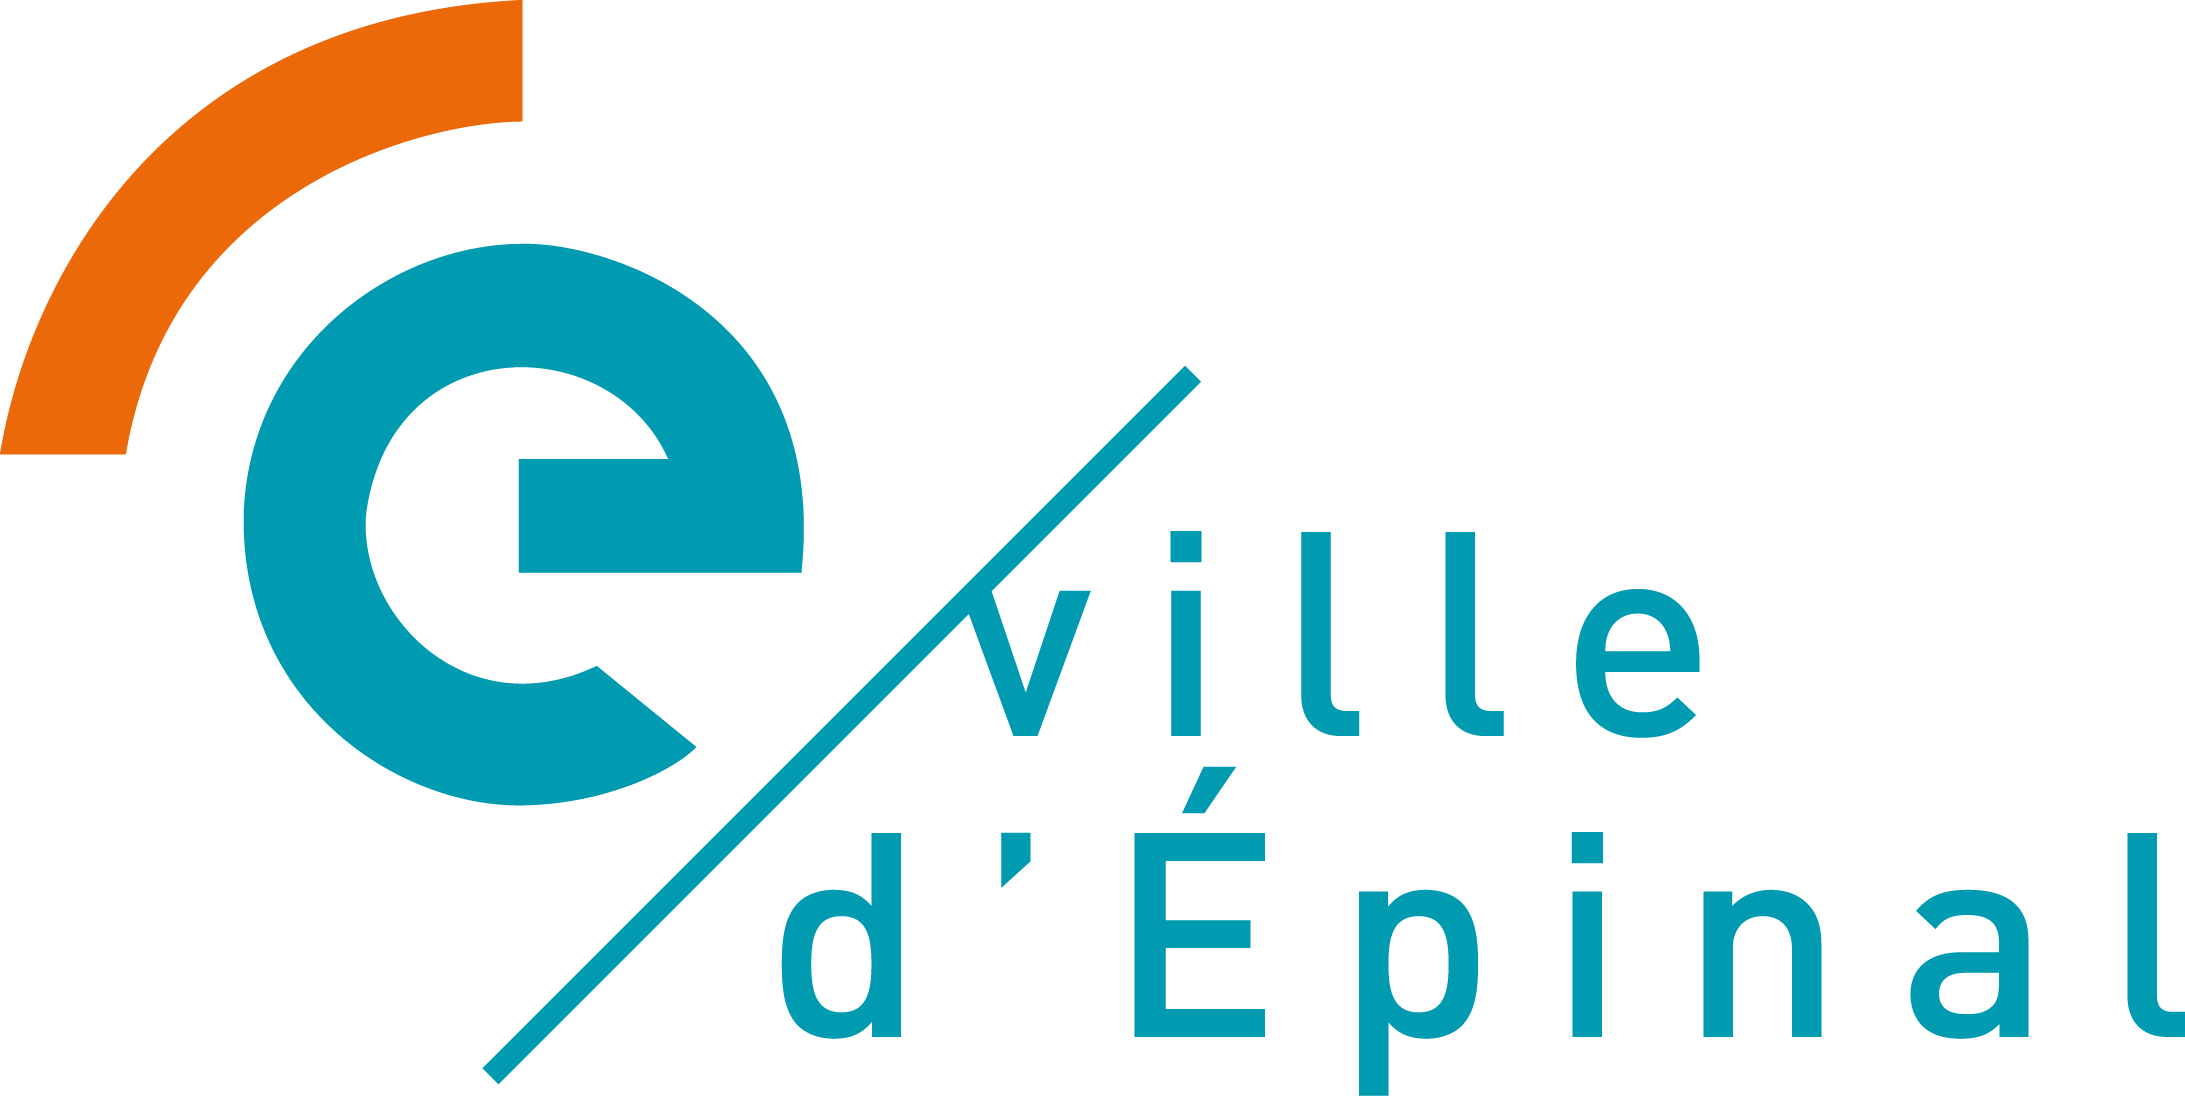 Ville d'Epinal